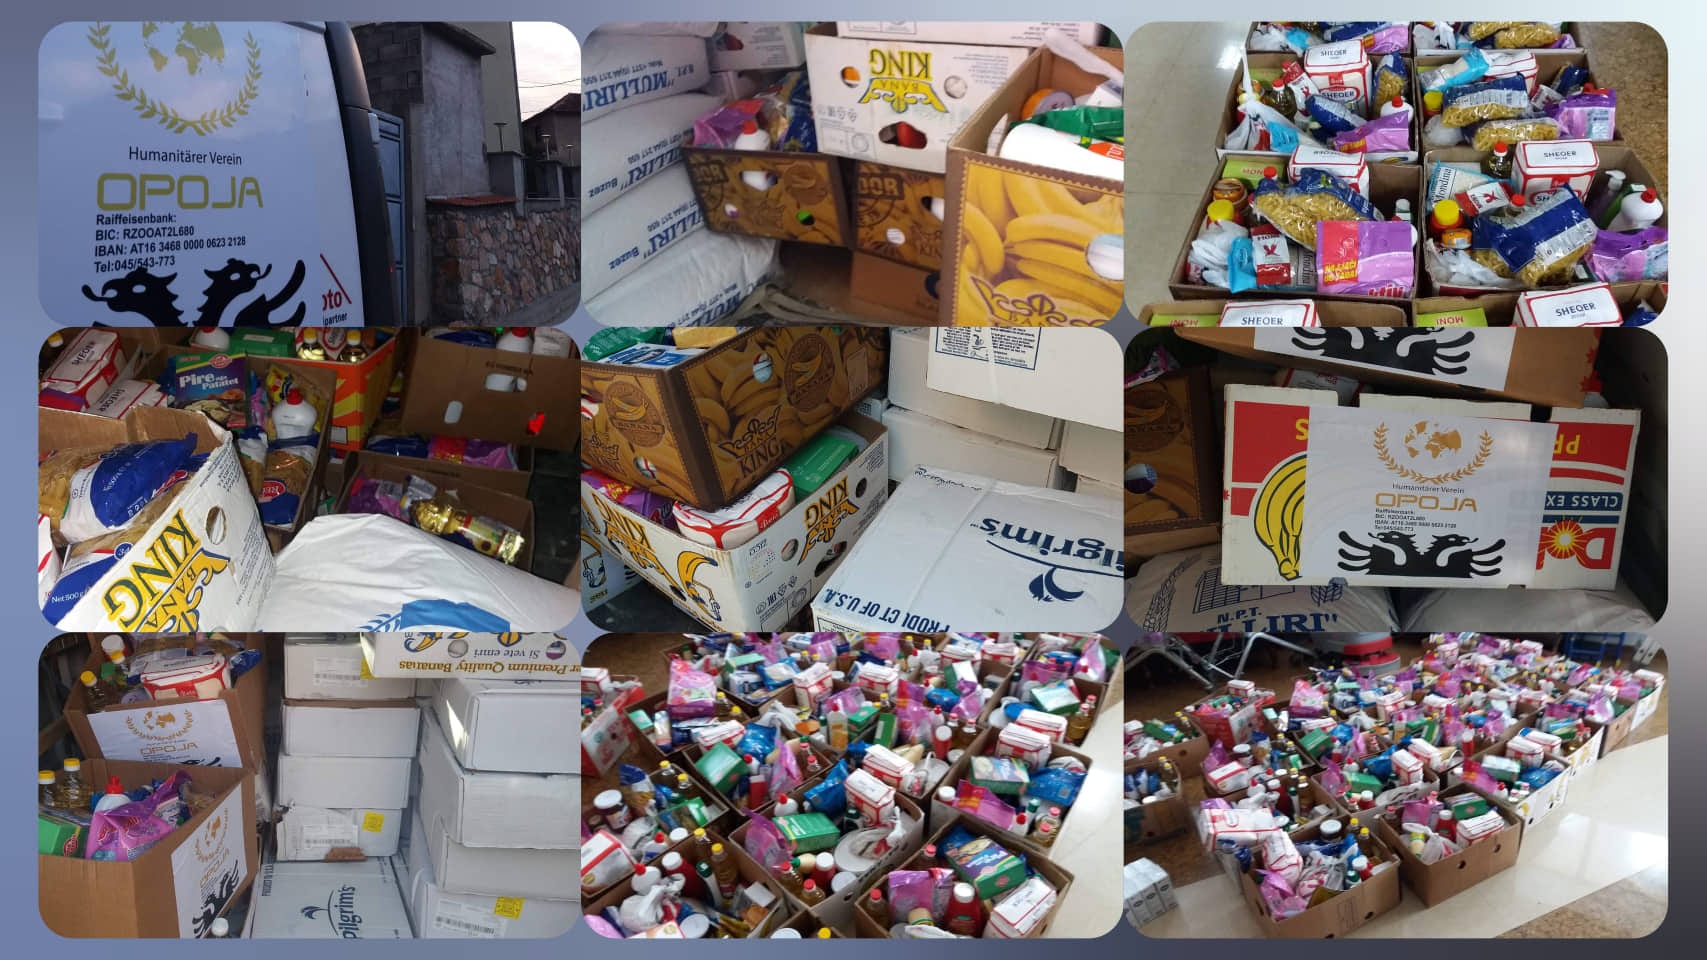 Shoqata Humanitare “OPOJA” shpërndan ndihma për 100 familje në Opojë